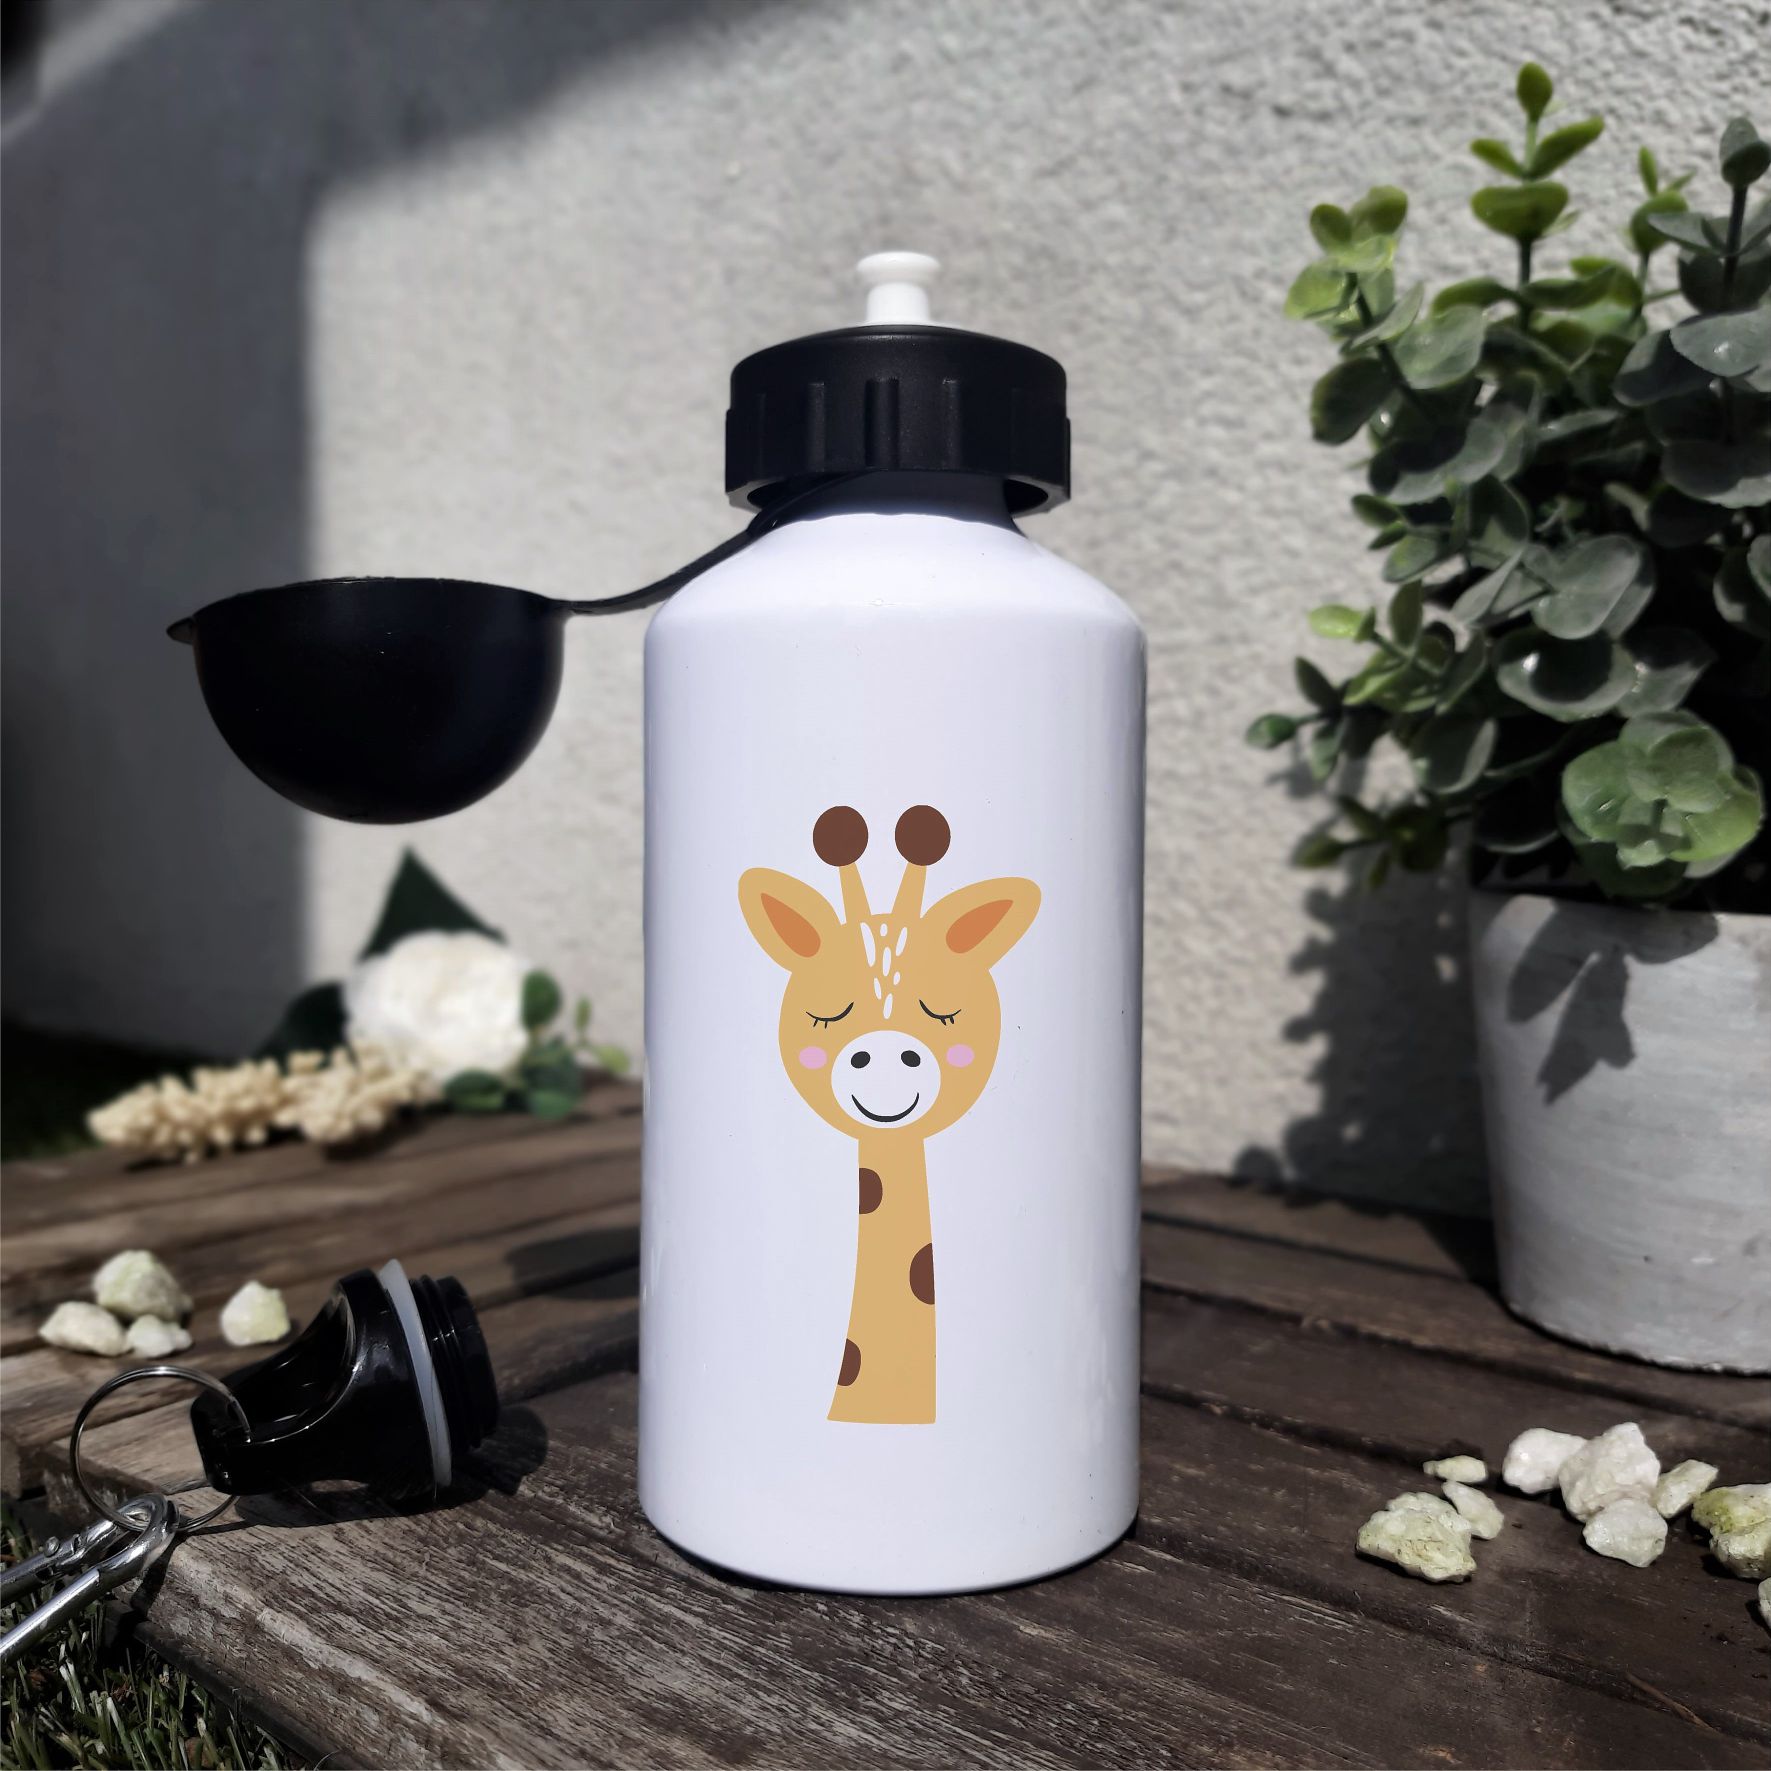 Trinkflasche "Giraffe - Da es förderlich für die Gesundheit ist, habe beschlossen glücklich zu sein", 500ml